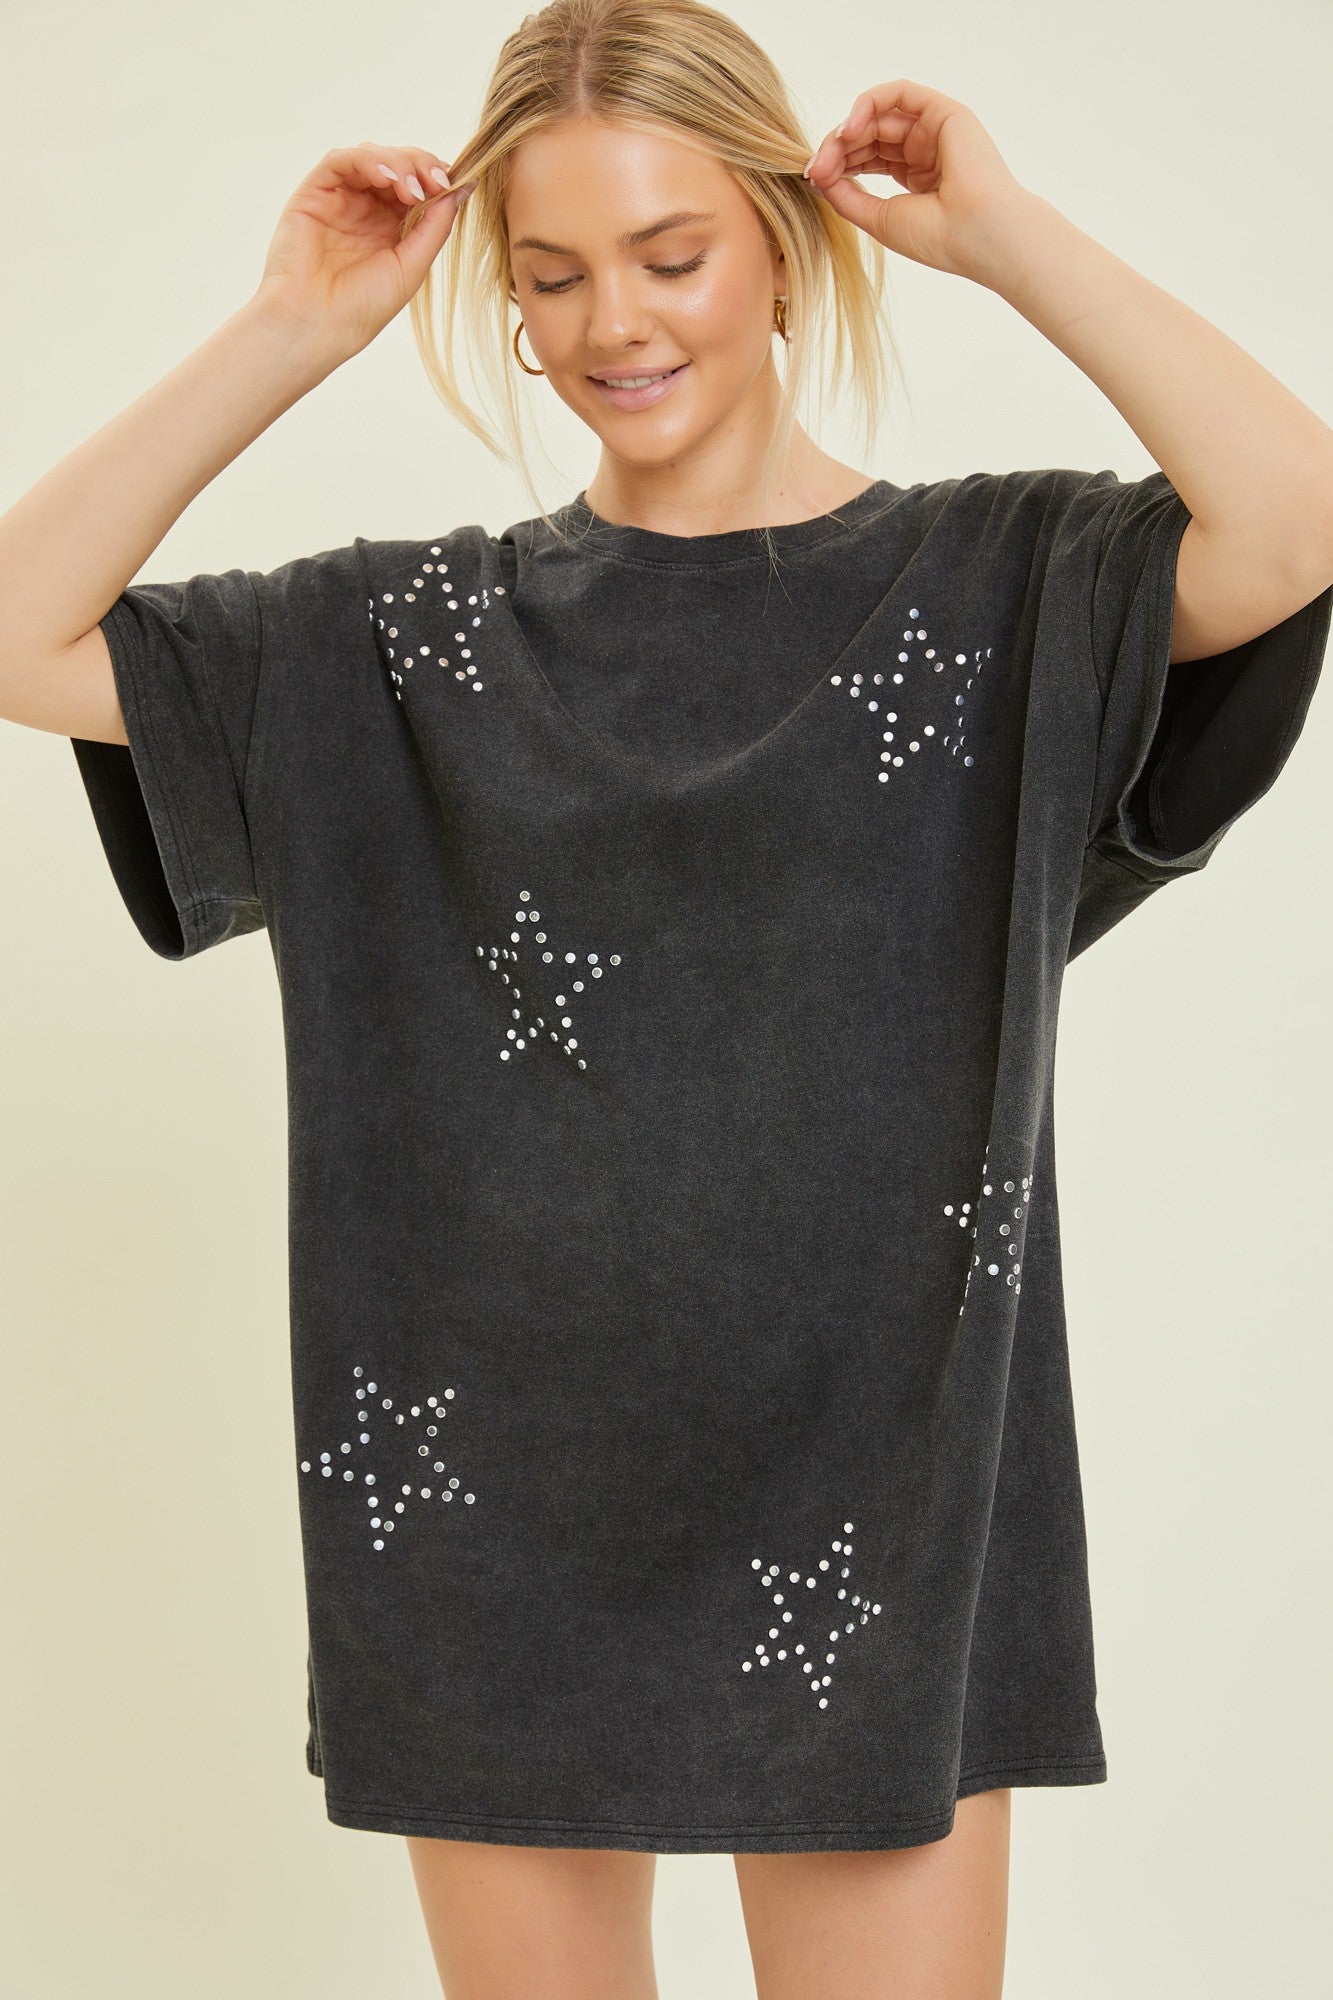 Star t-shirt dress